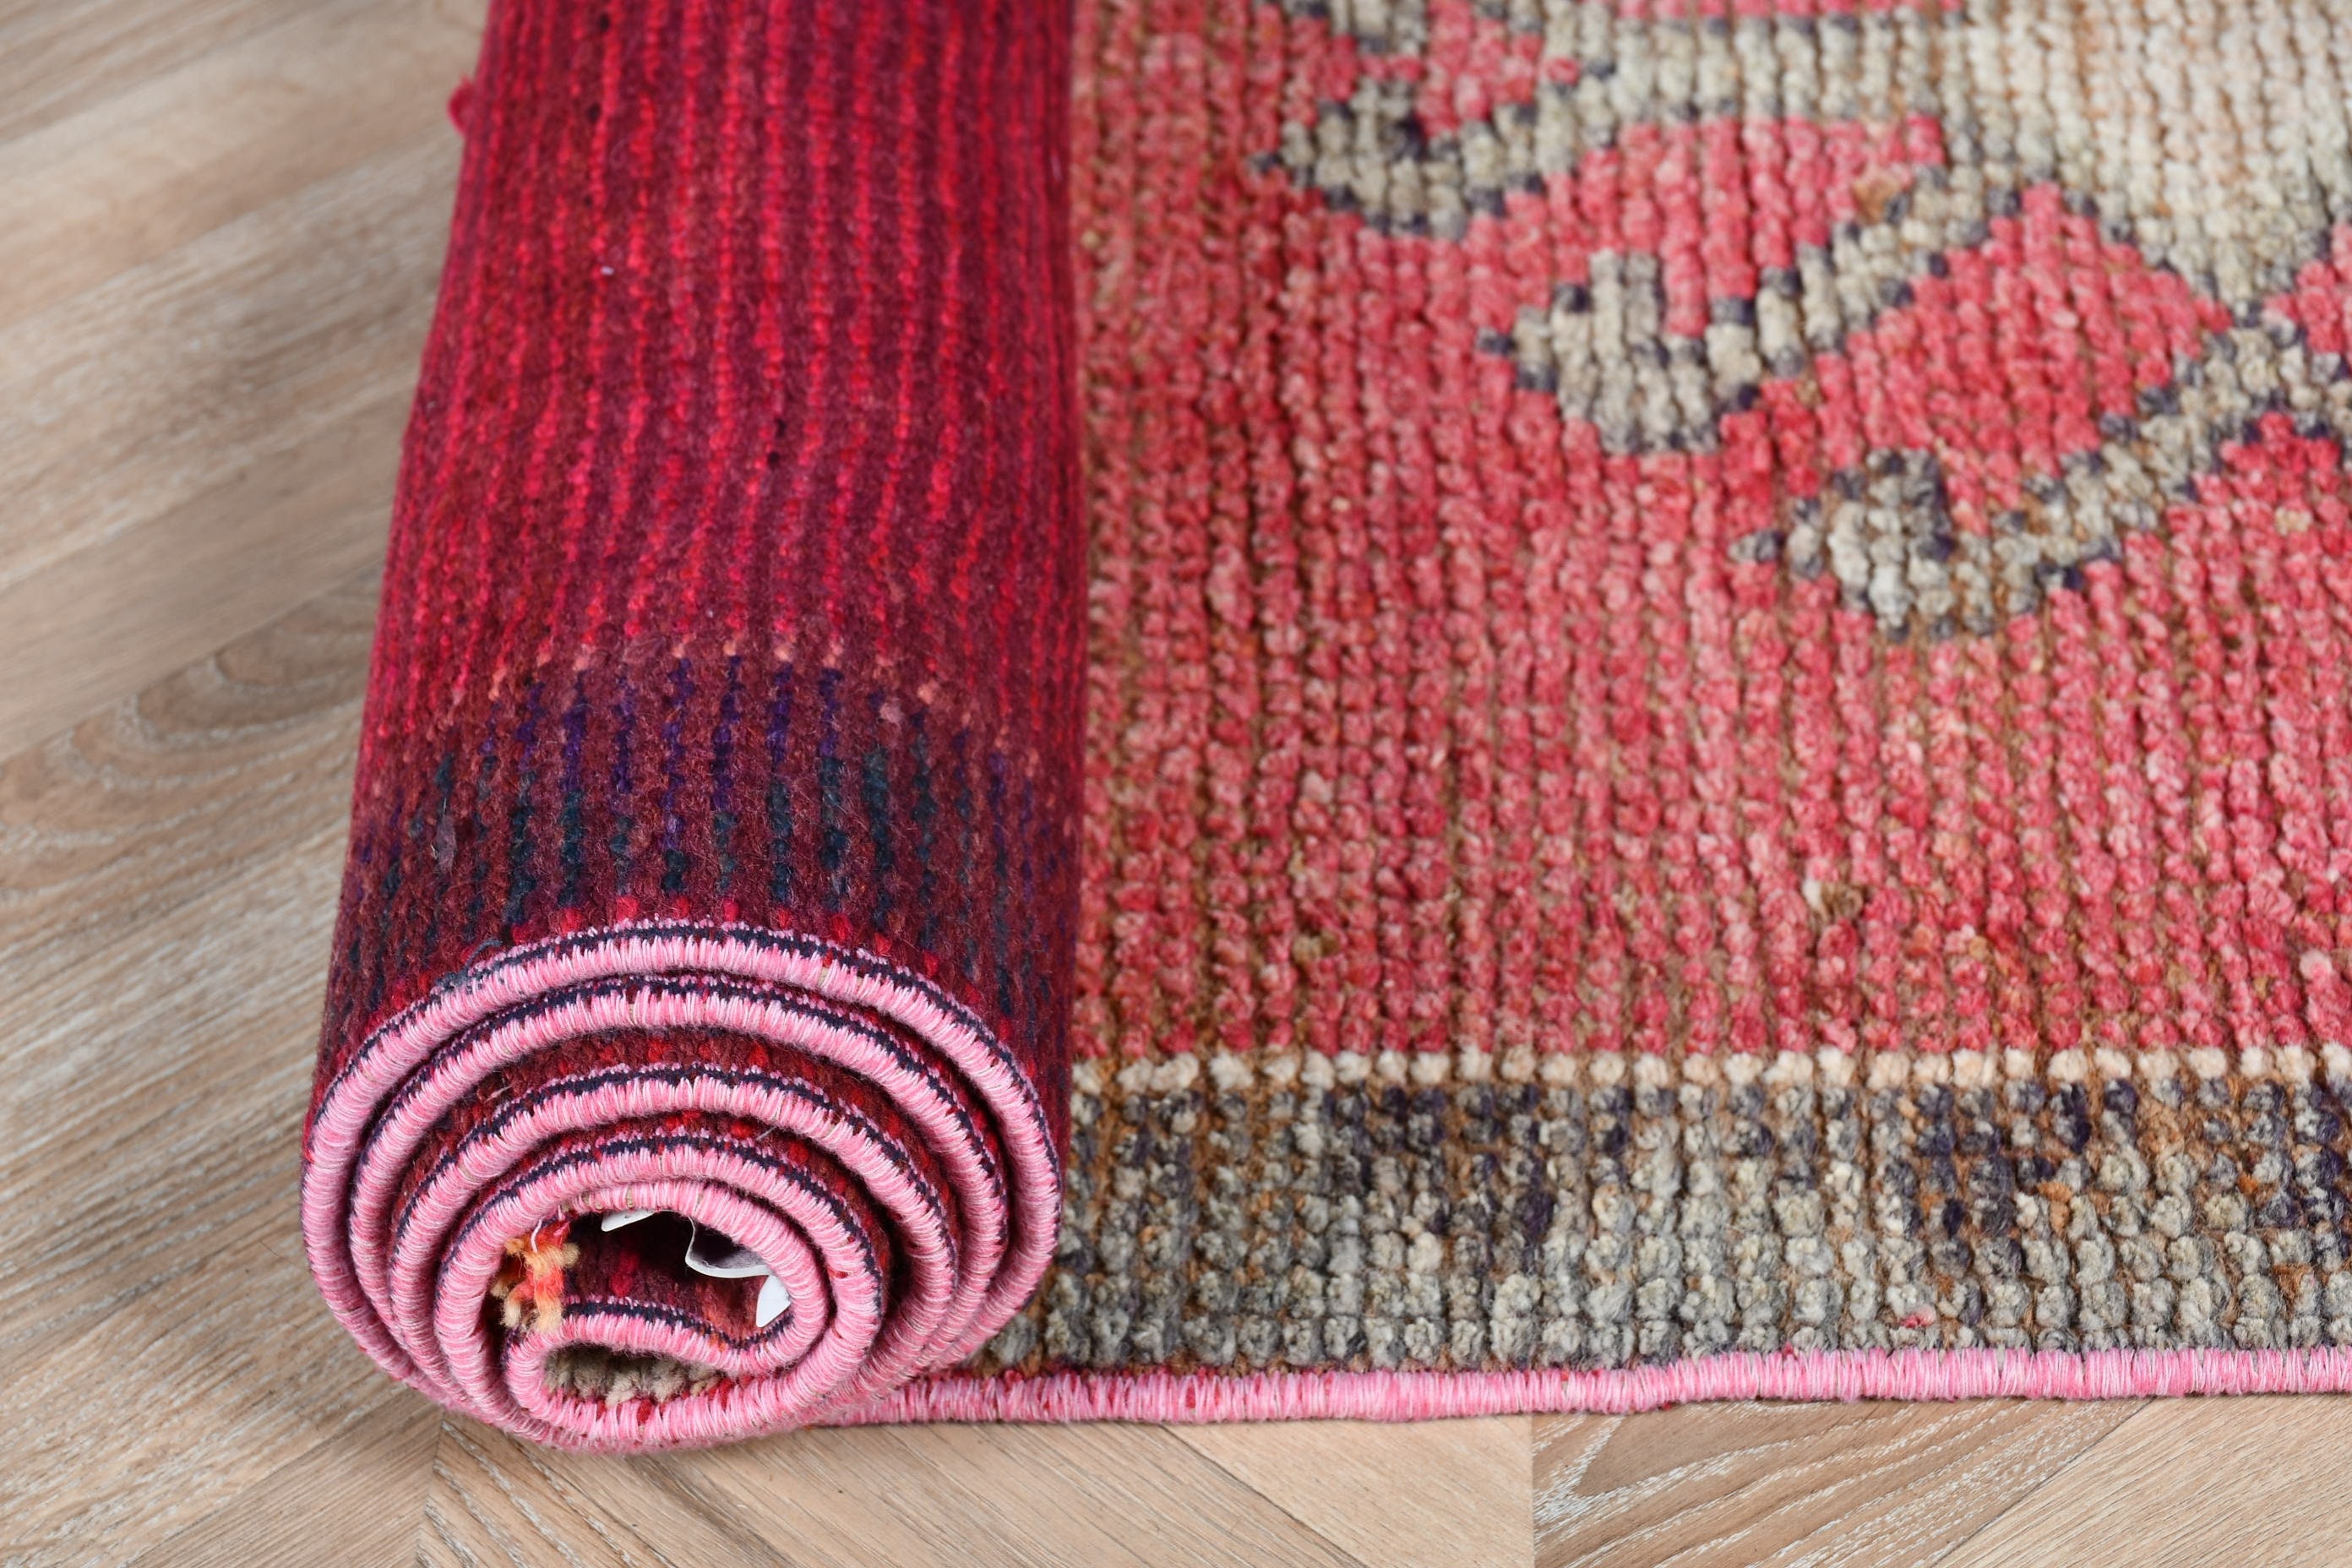 Floor Rugs, Boho Rug, Turkish Rug, Rugs for Corridor, Vintage Rug, 2.9x10 ft Runner Rug, Corridor Rugs, Pink Oushak Rugs, Moroccan Rugs